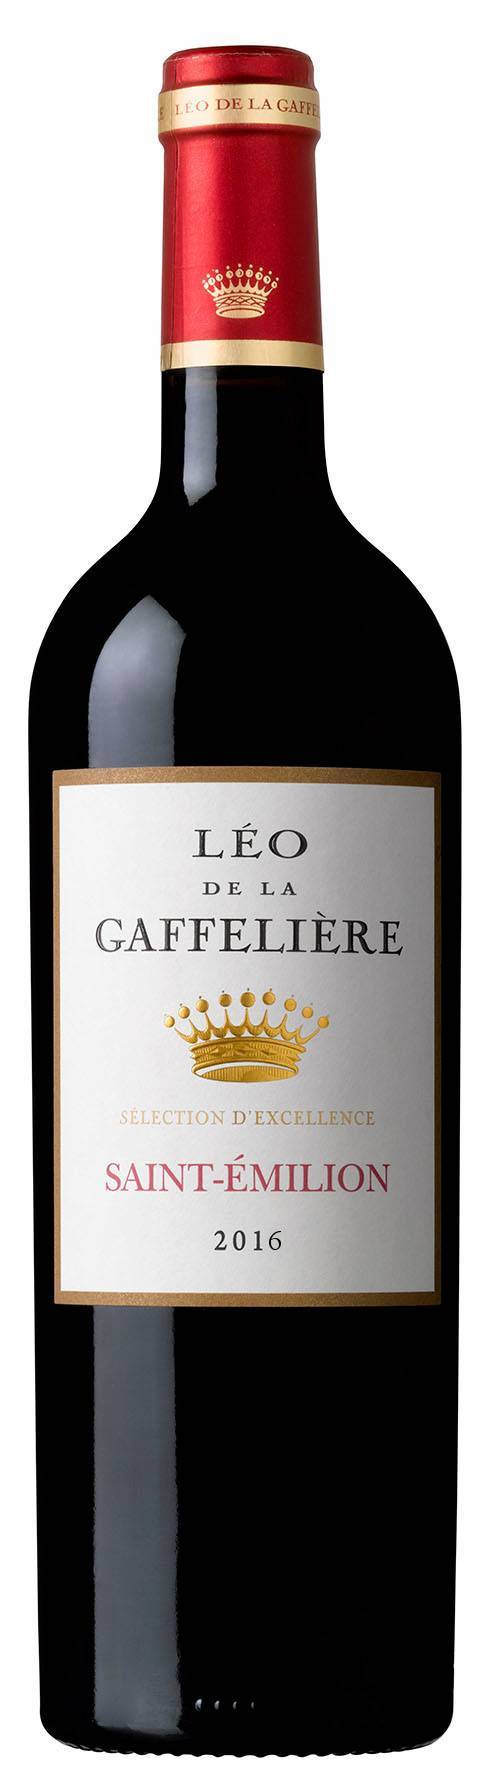 Léo de la gaffeliere saint émilion vin 2018